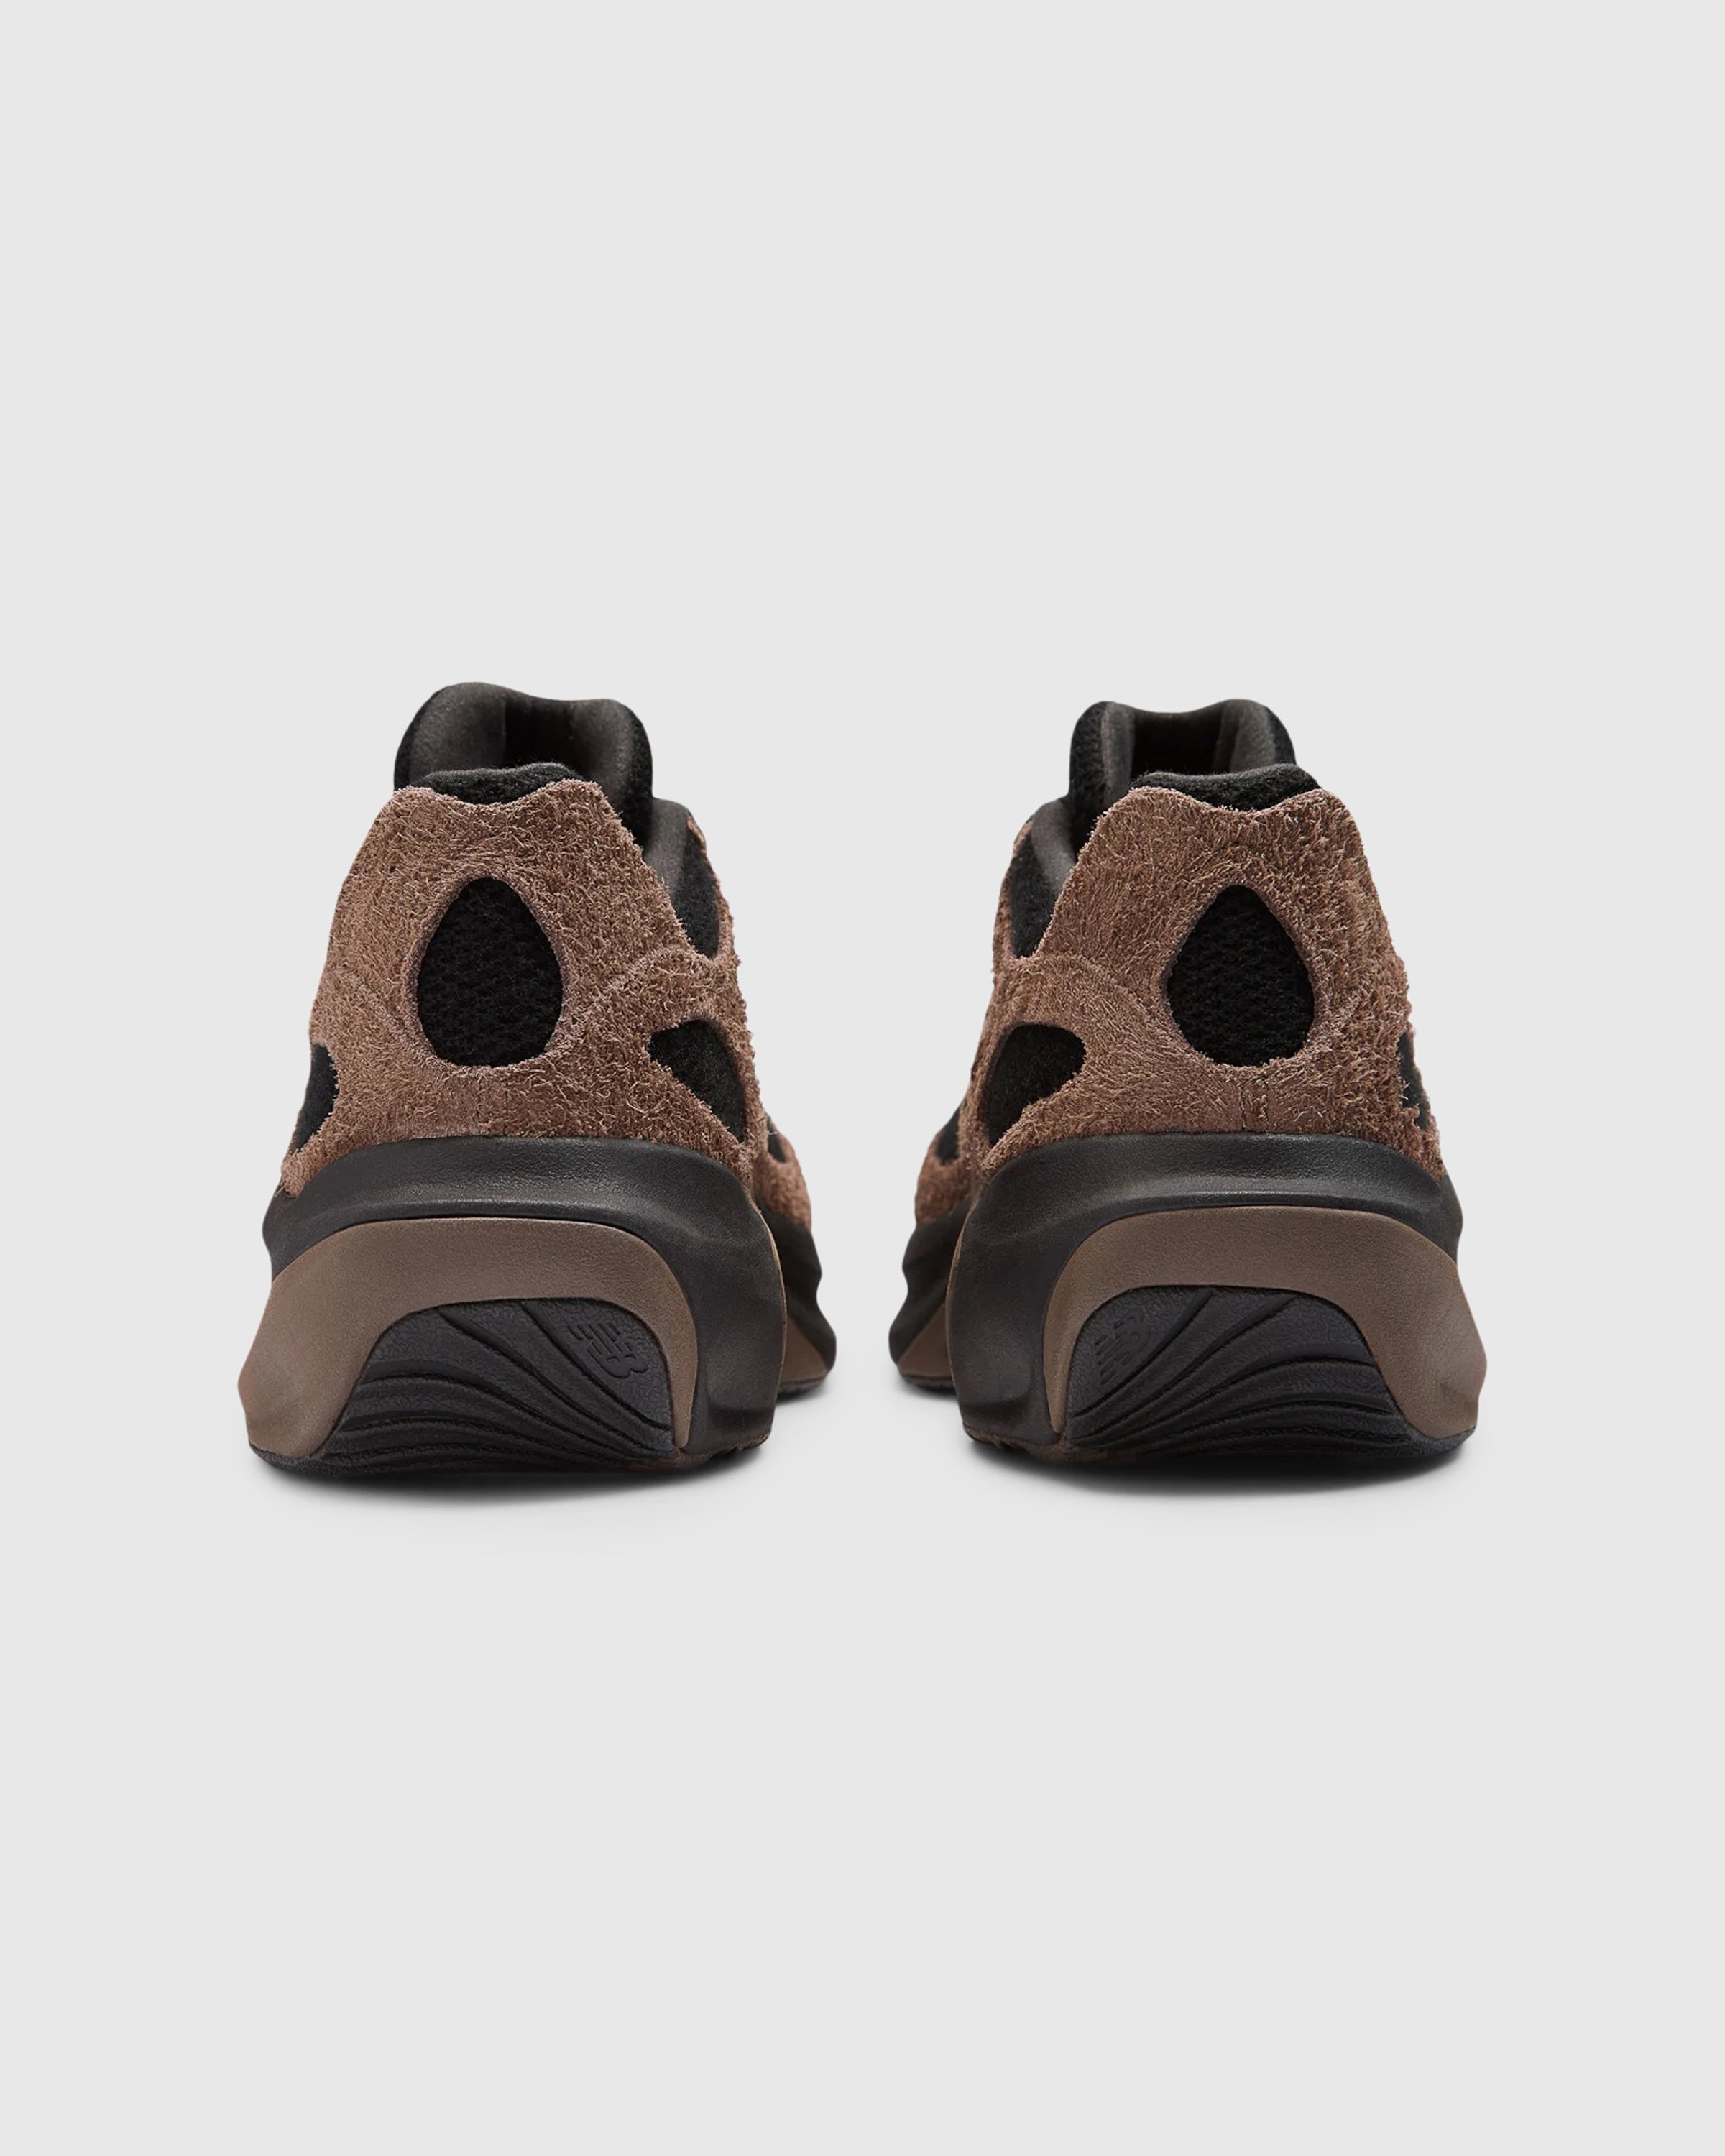 New Balance - WRPD Runner Dark Mushroom - Footwear - Brown - Image 4